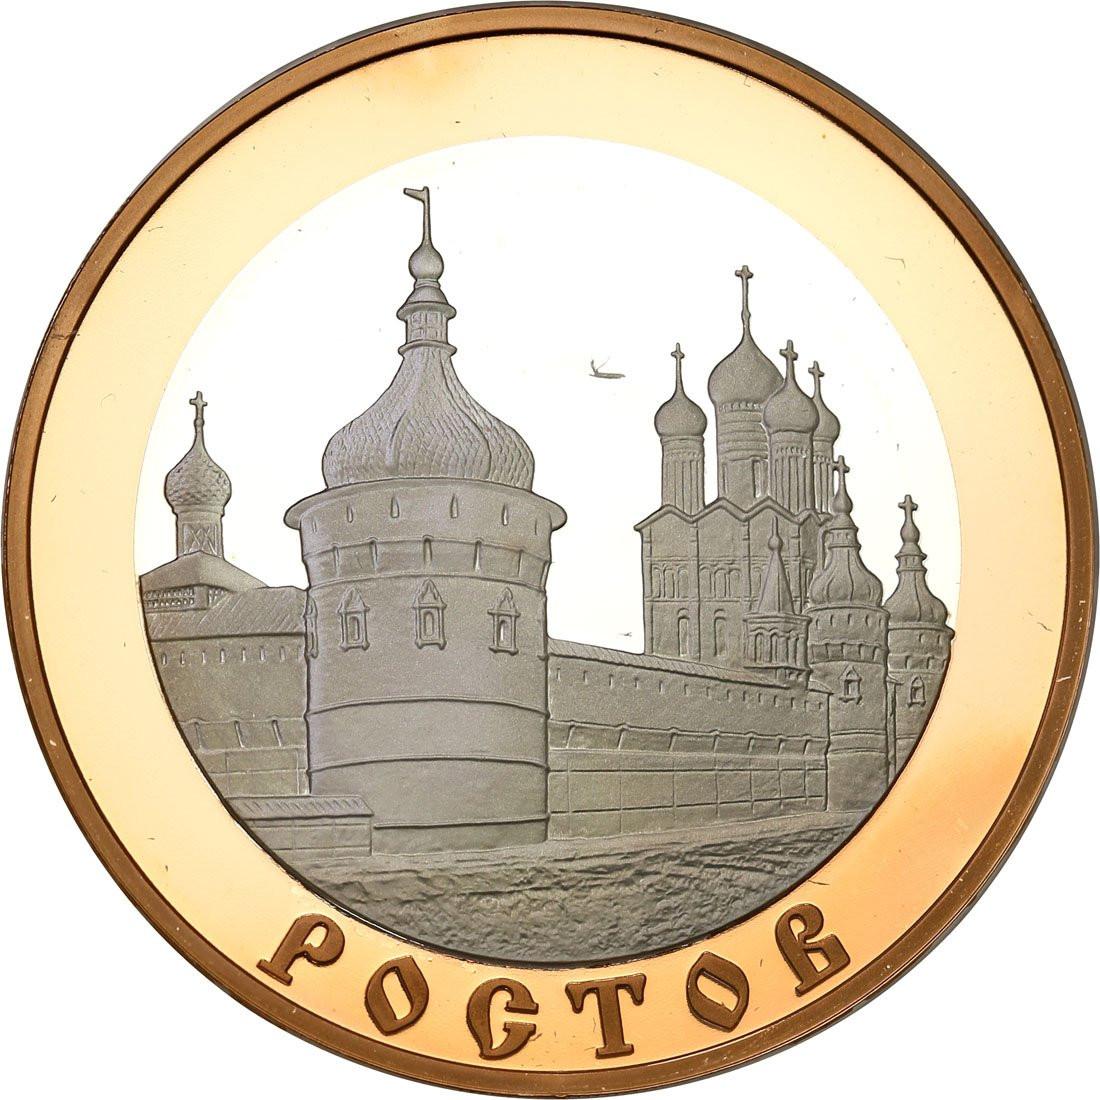 ZSRR/Rosja. 5 rubli 2004 Rostów - złoto, srebro